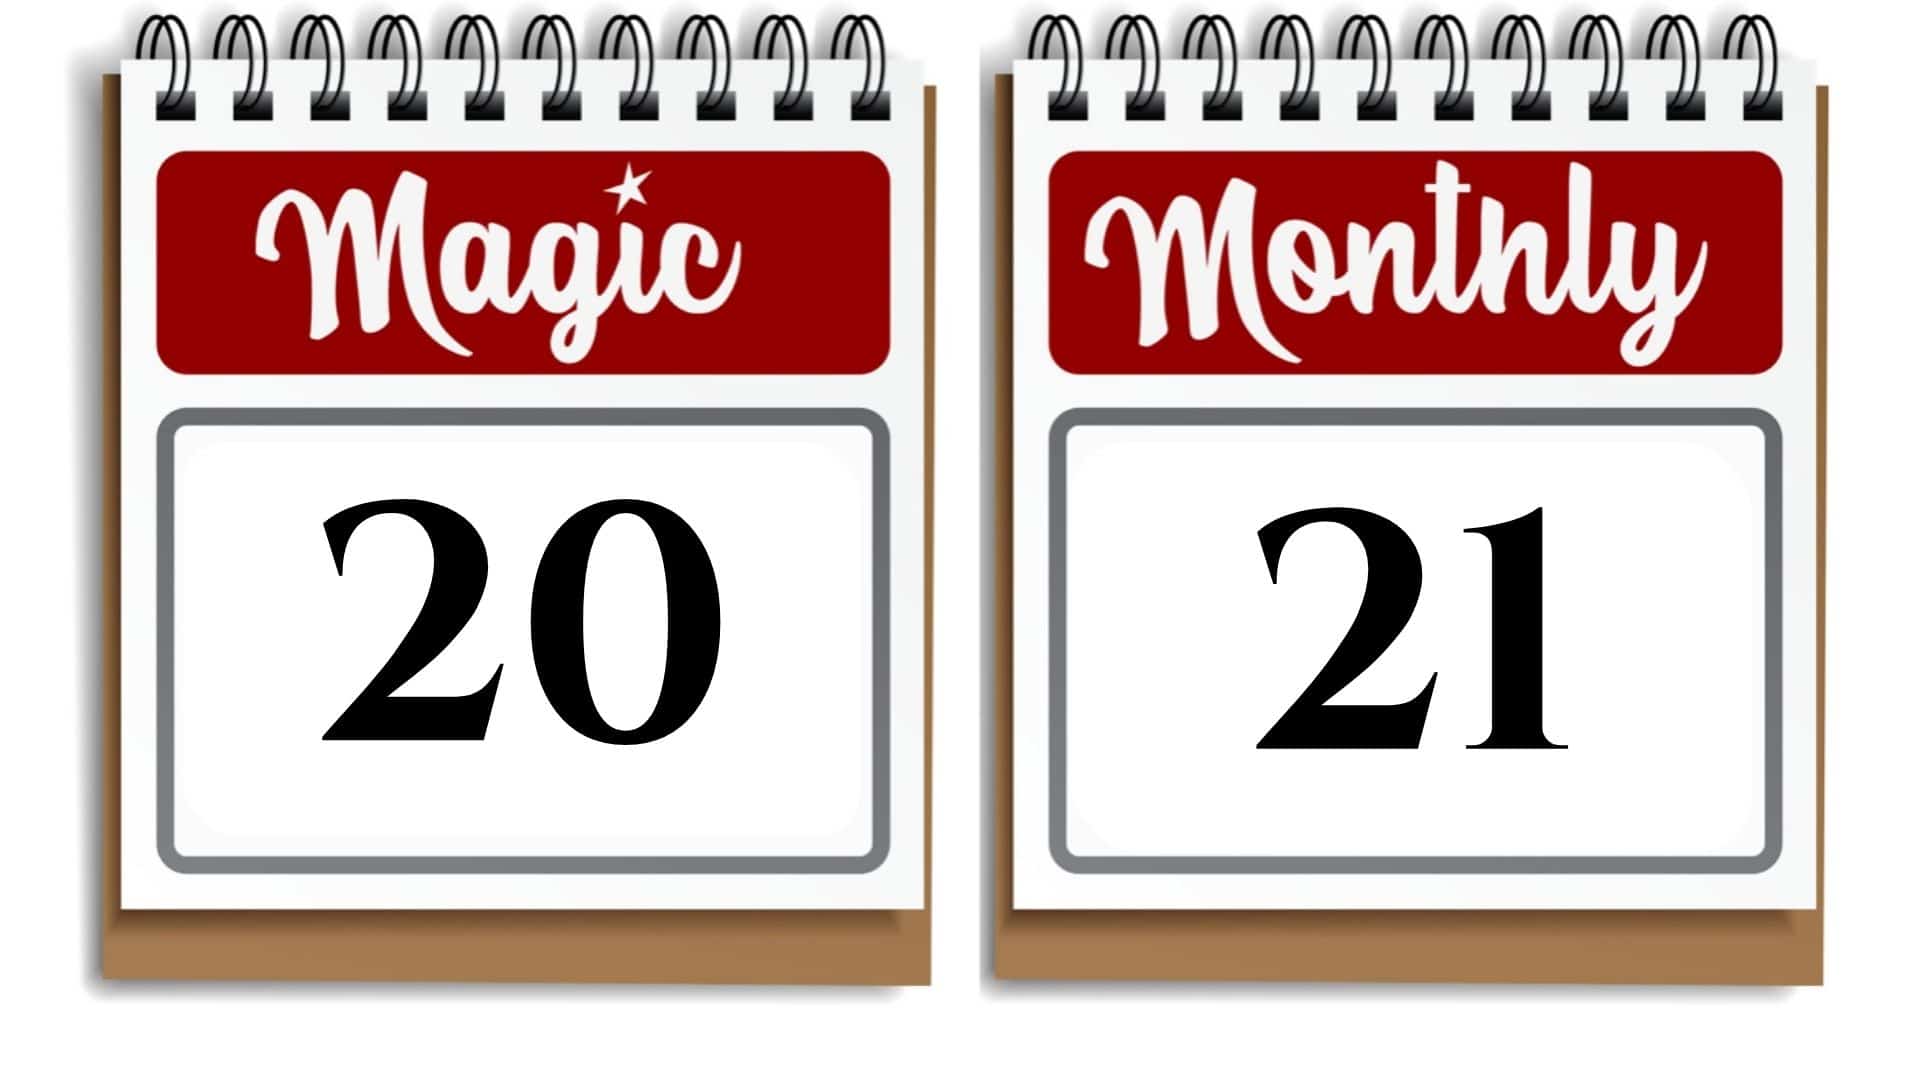 Magic Monthly